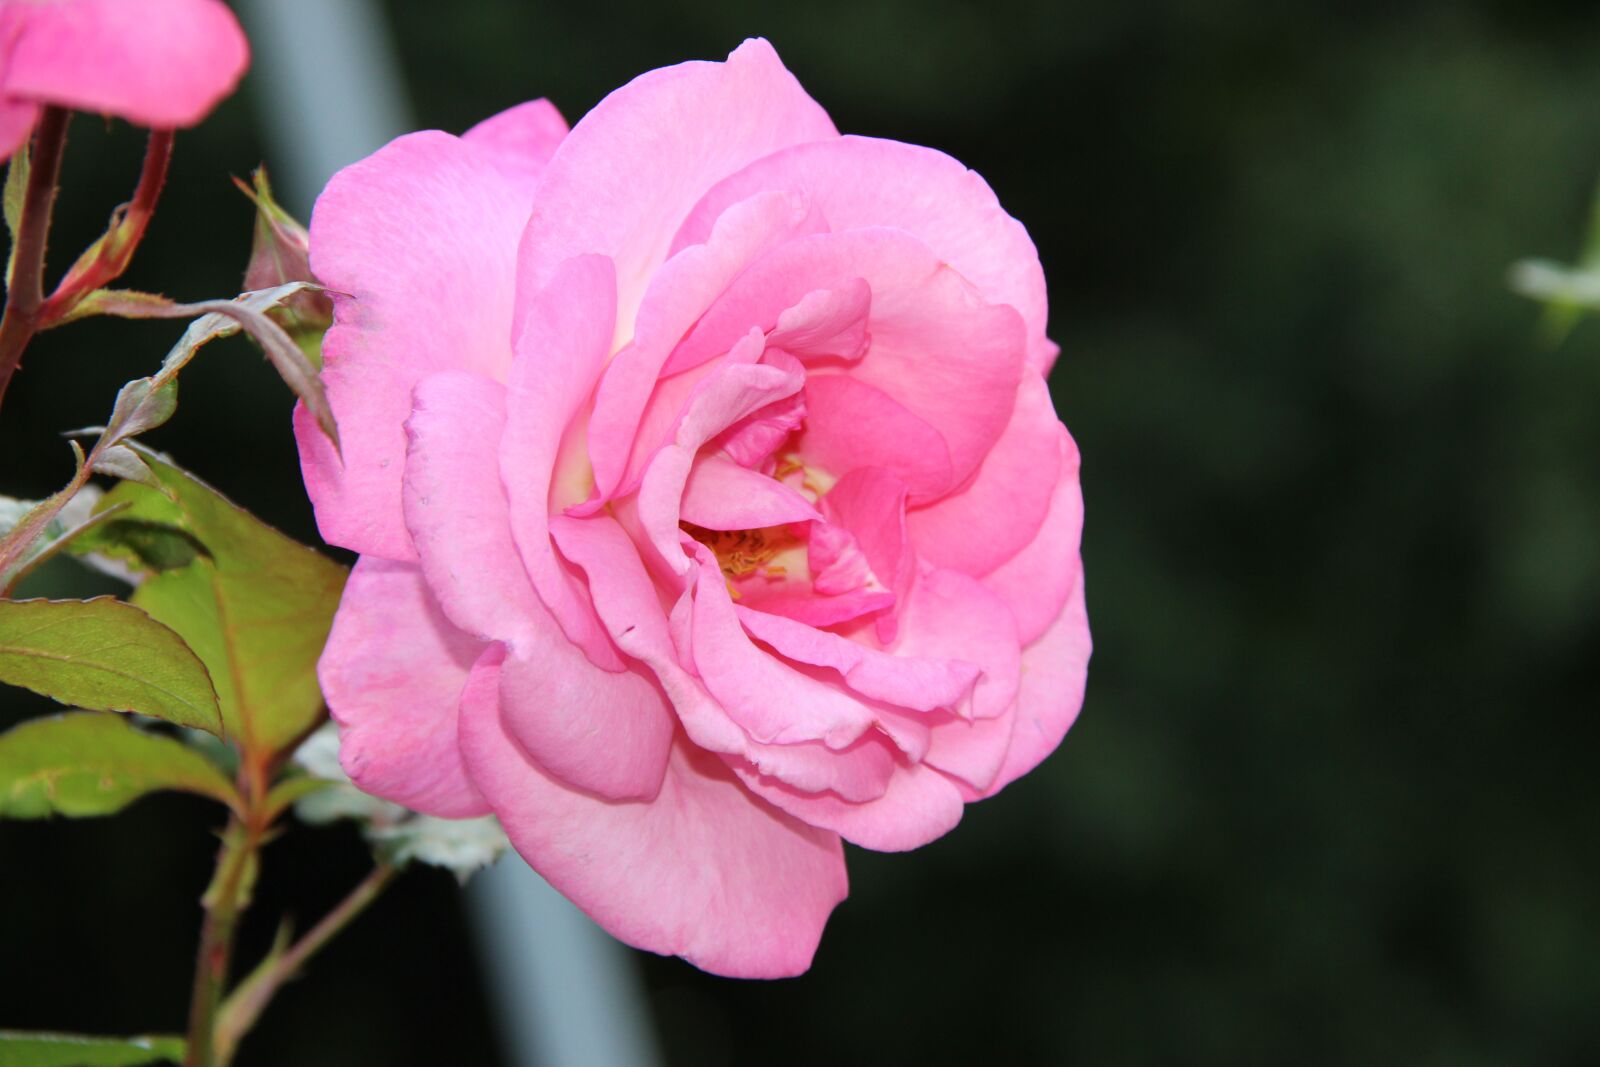 Canon EOS 600D (Rebel EOS T3i / EOS Kiss X5) sample photo. Irina, roses, rose garden photography